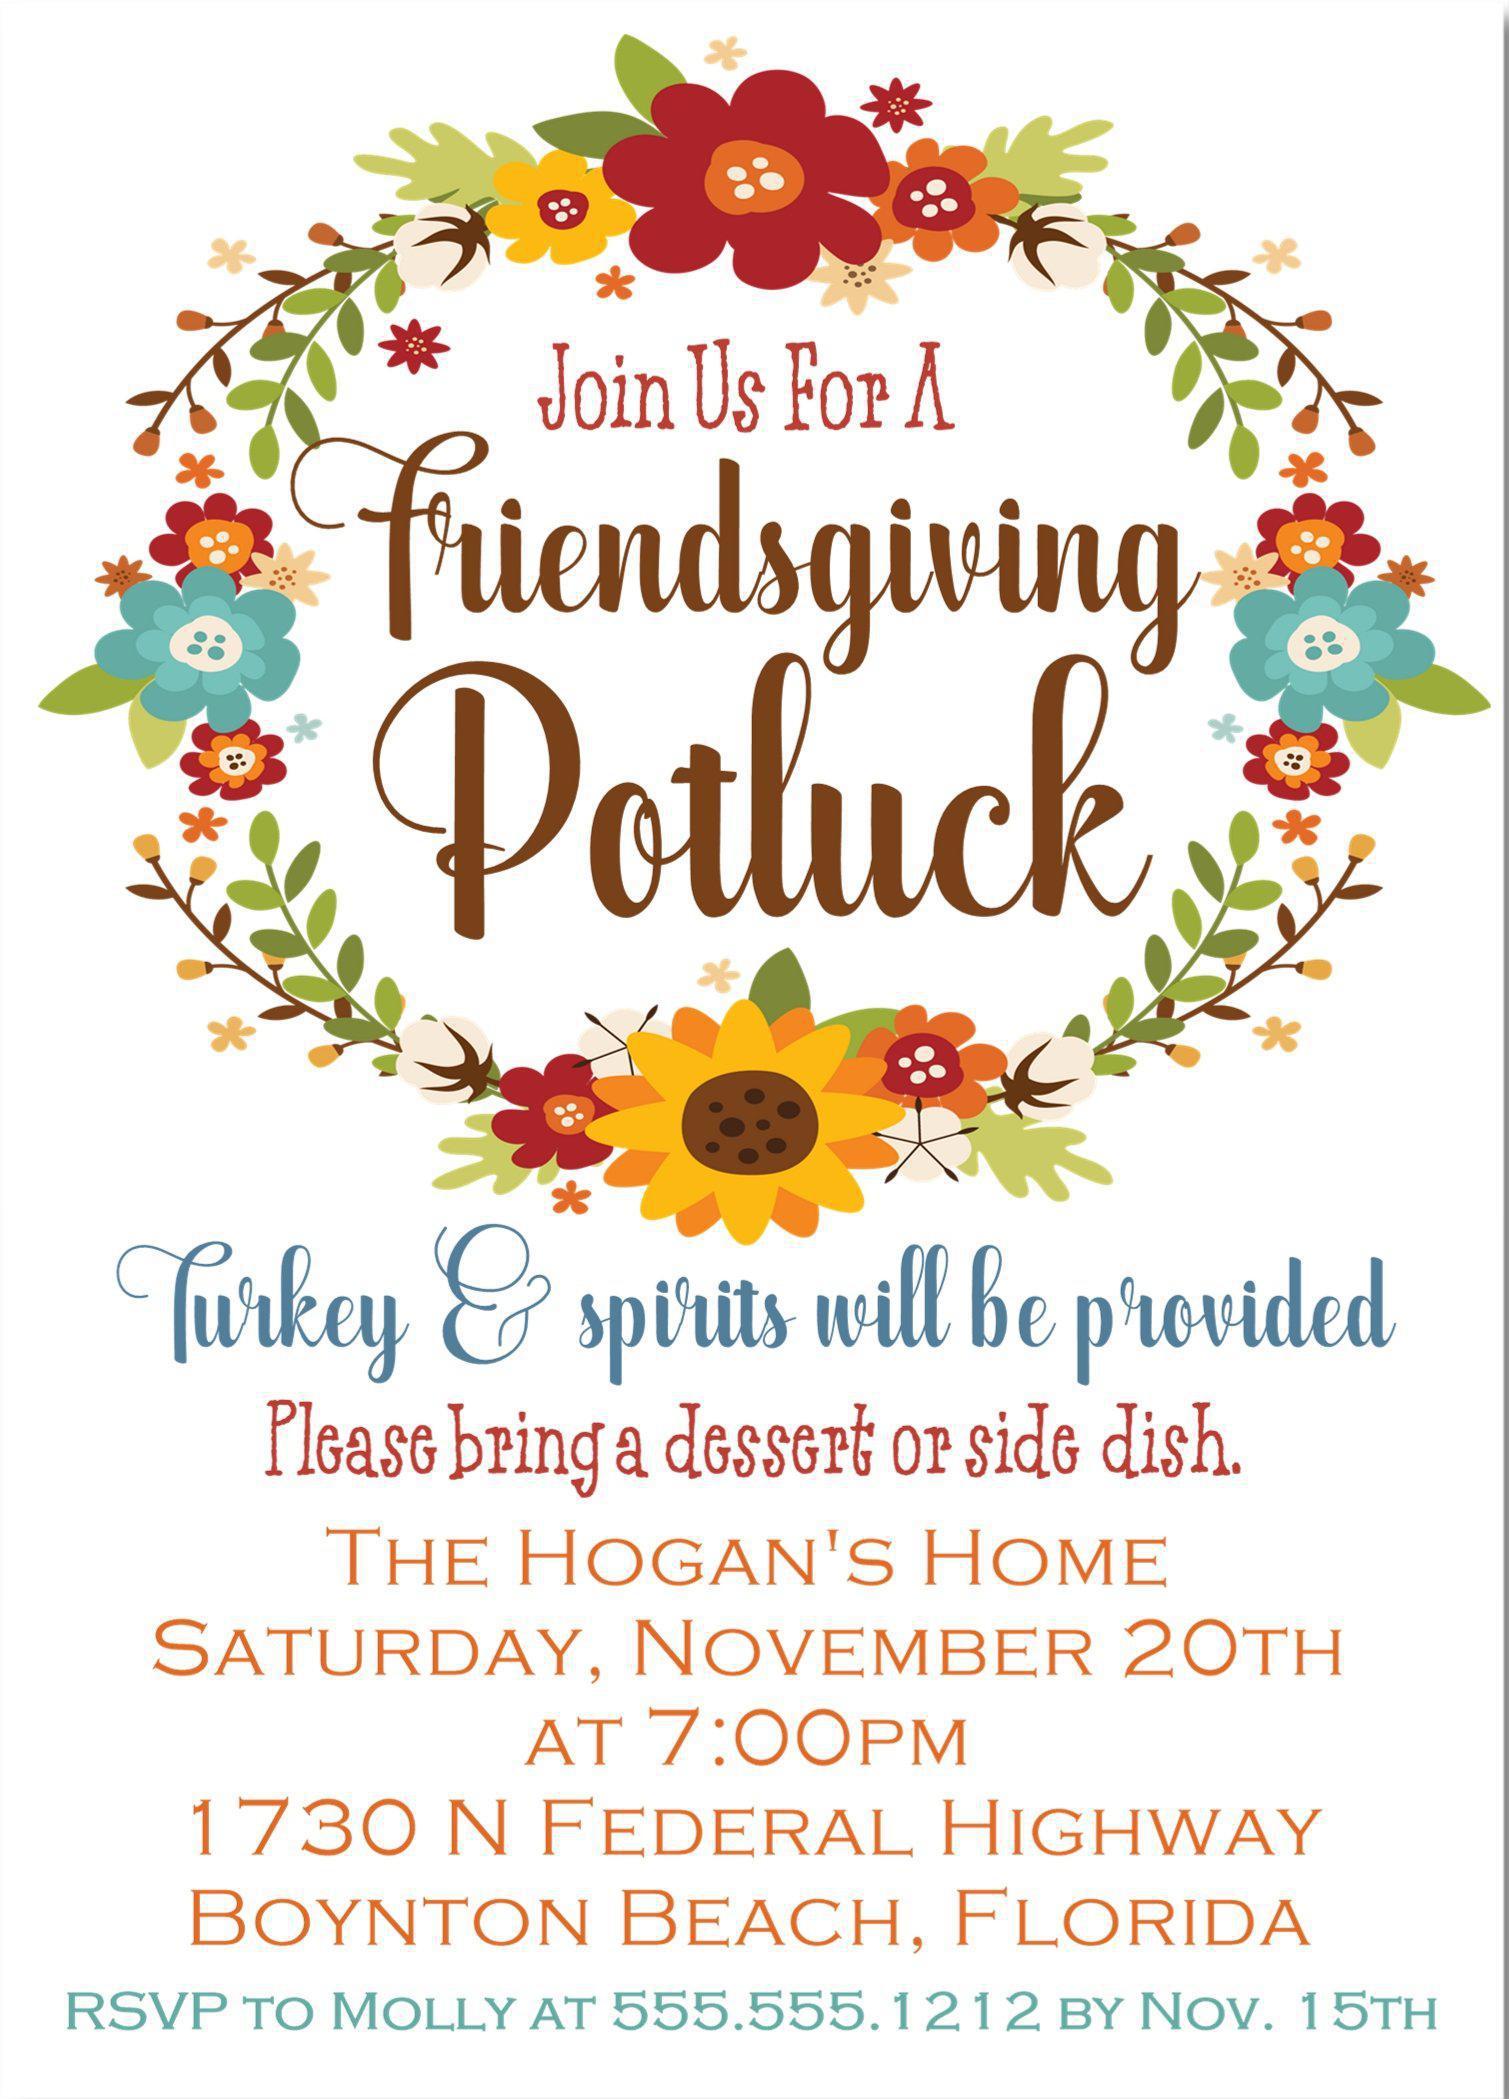 Friendsgiving Potluck Invitations